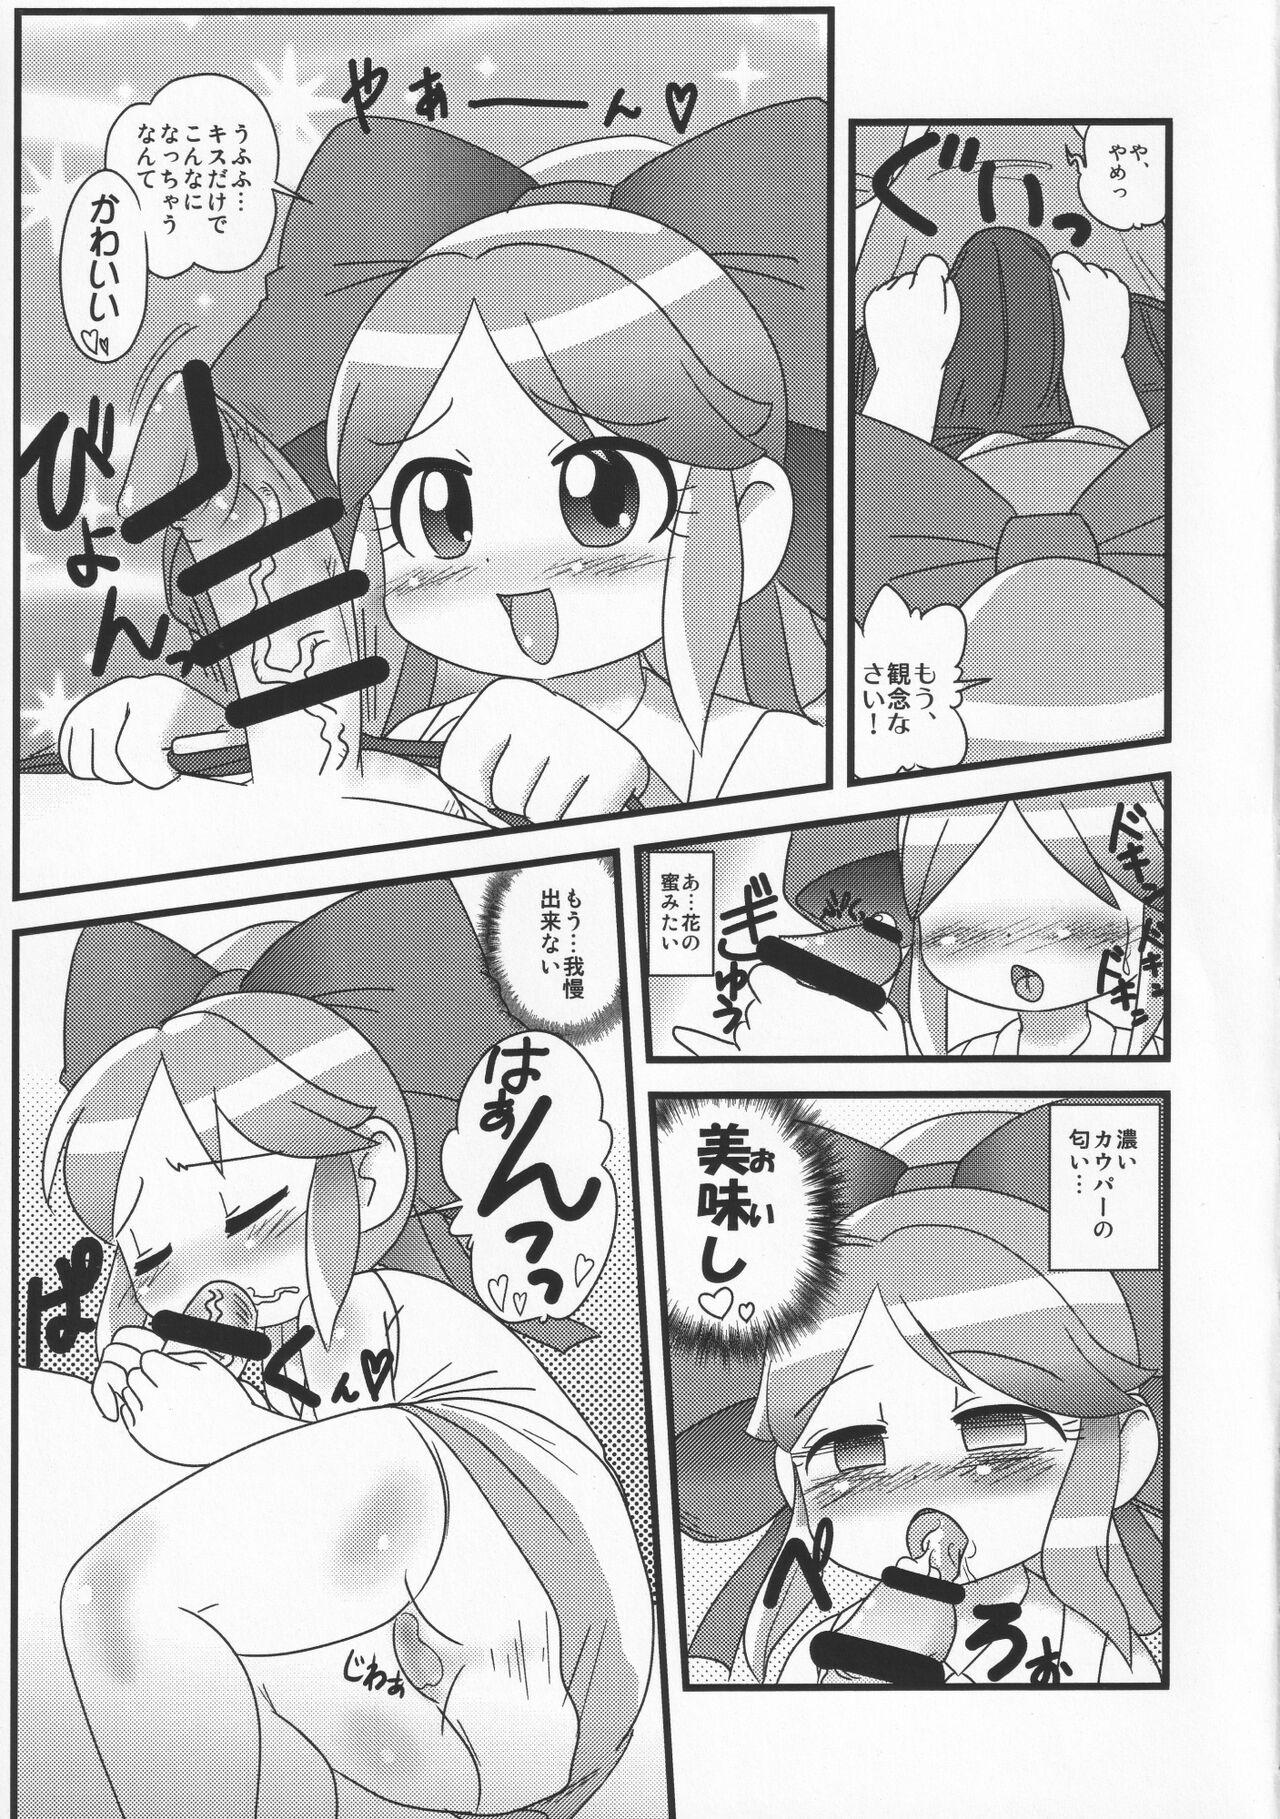 Stockings Taose!! Kimari-chan - Battle spirits Mmd - Page 4